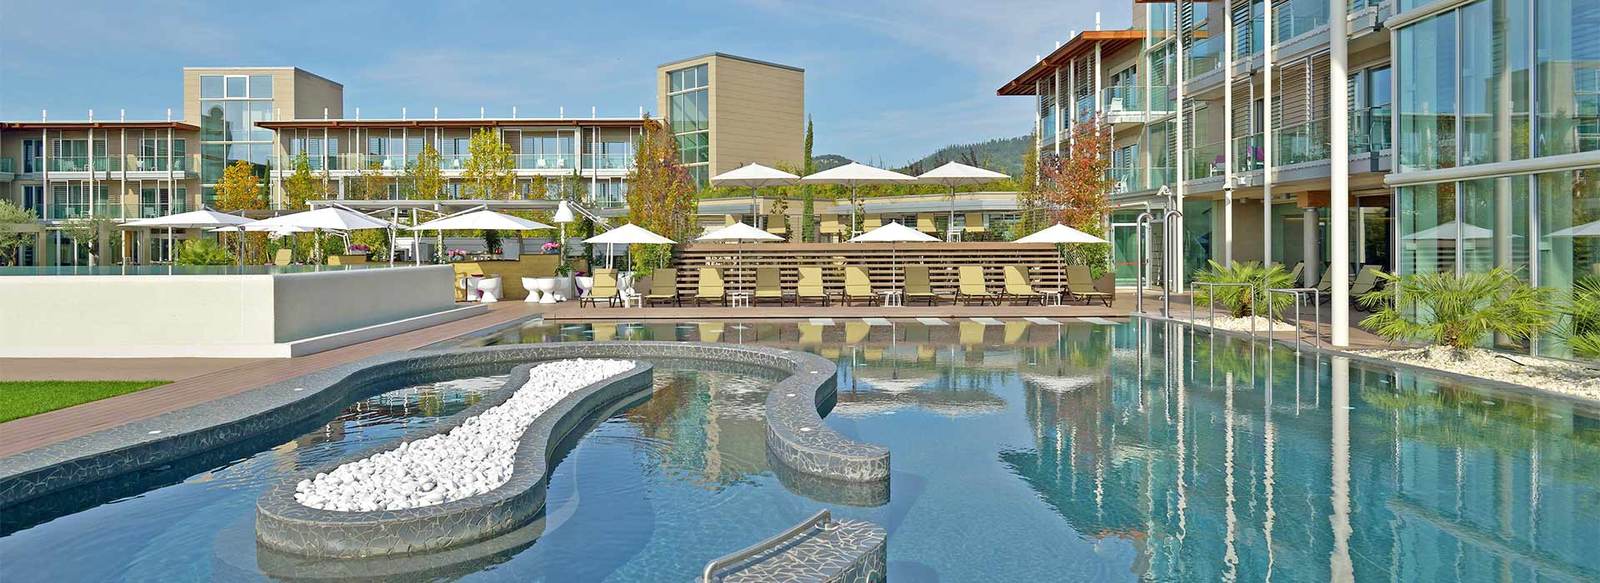 Spa Hotel sul Lago di Garda